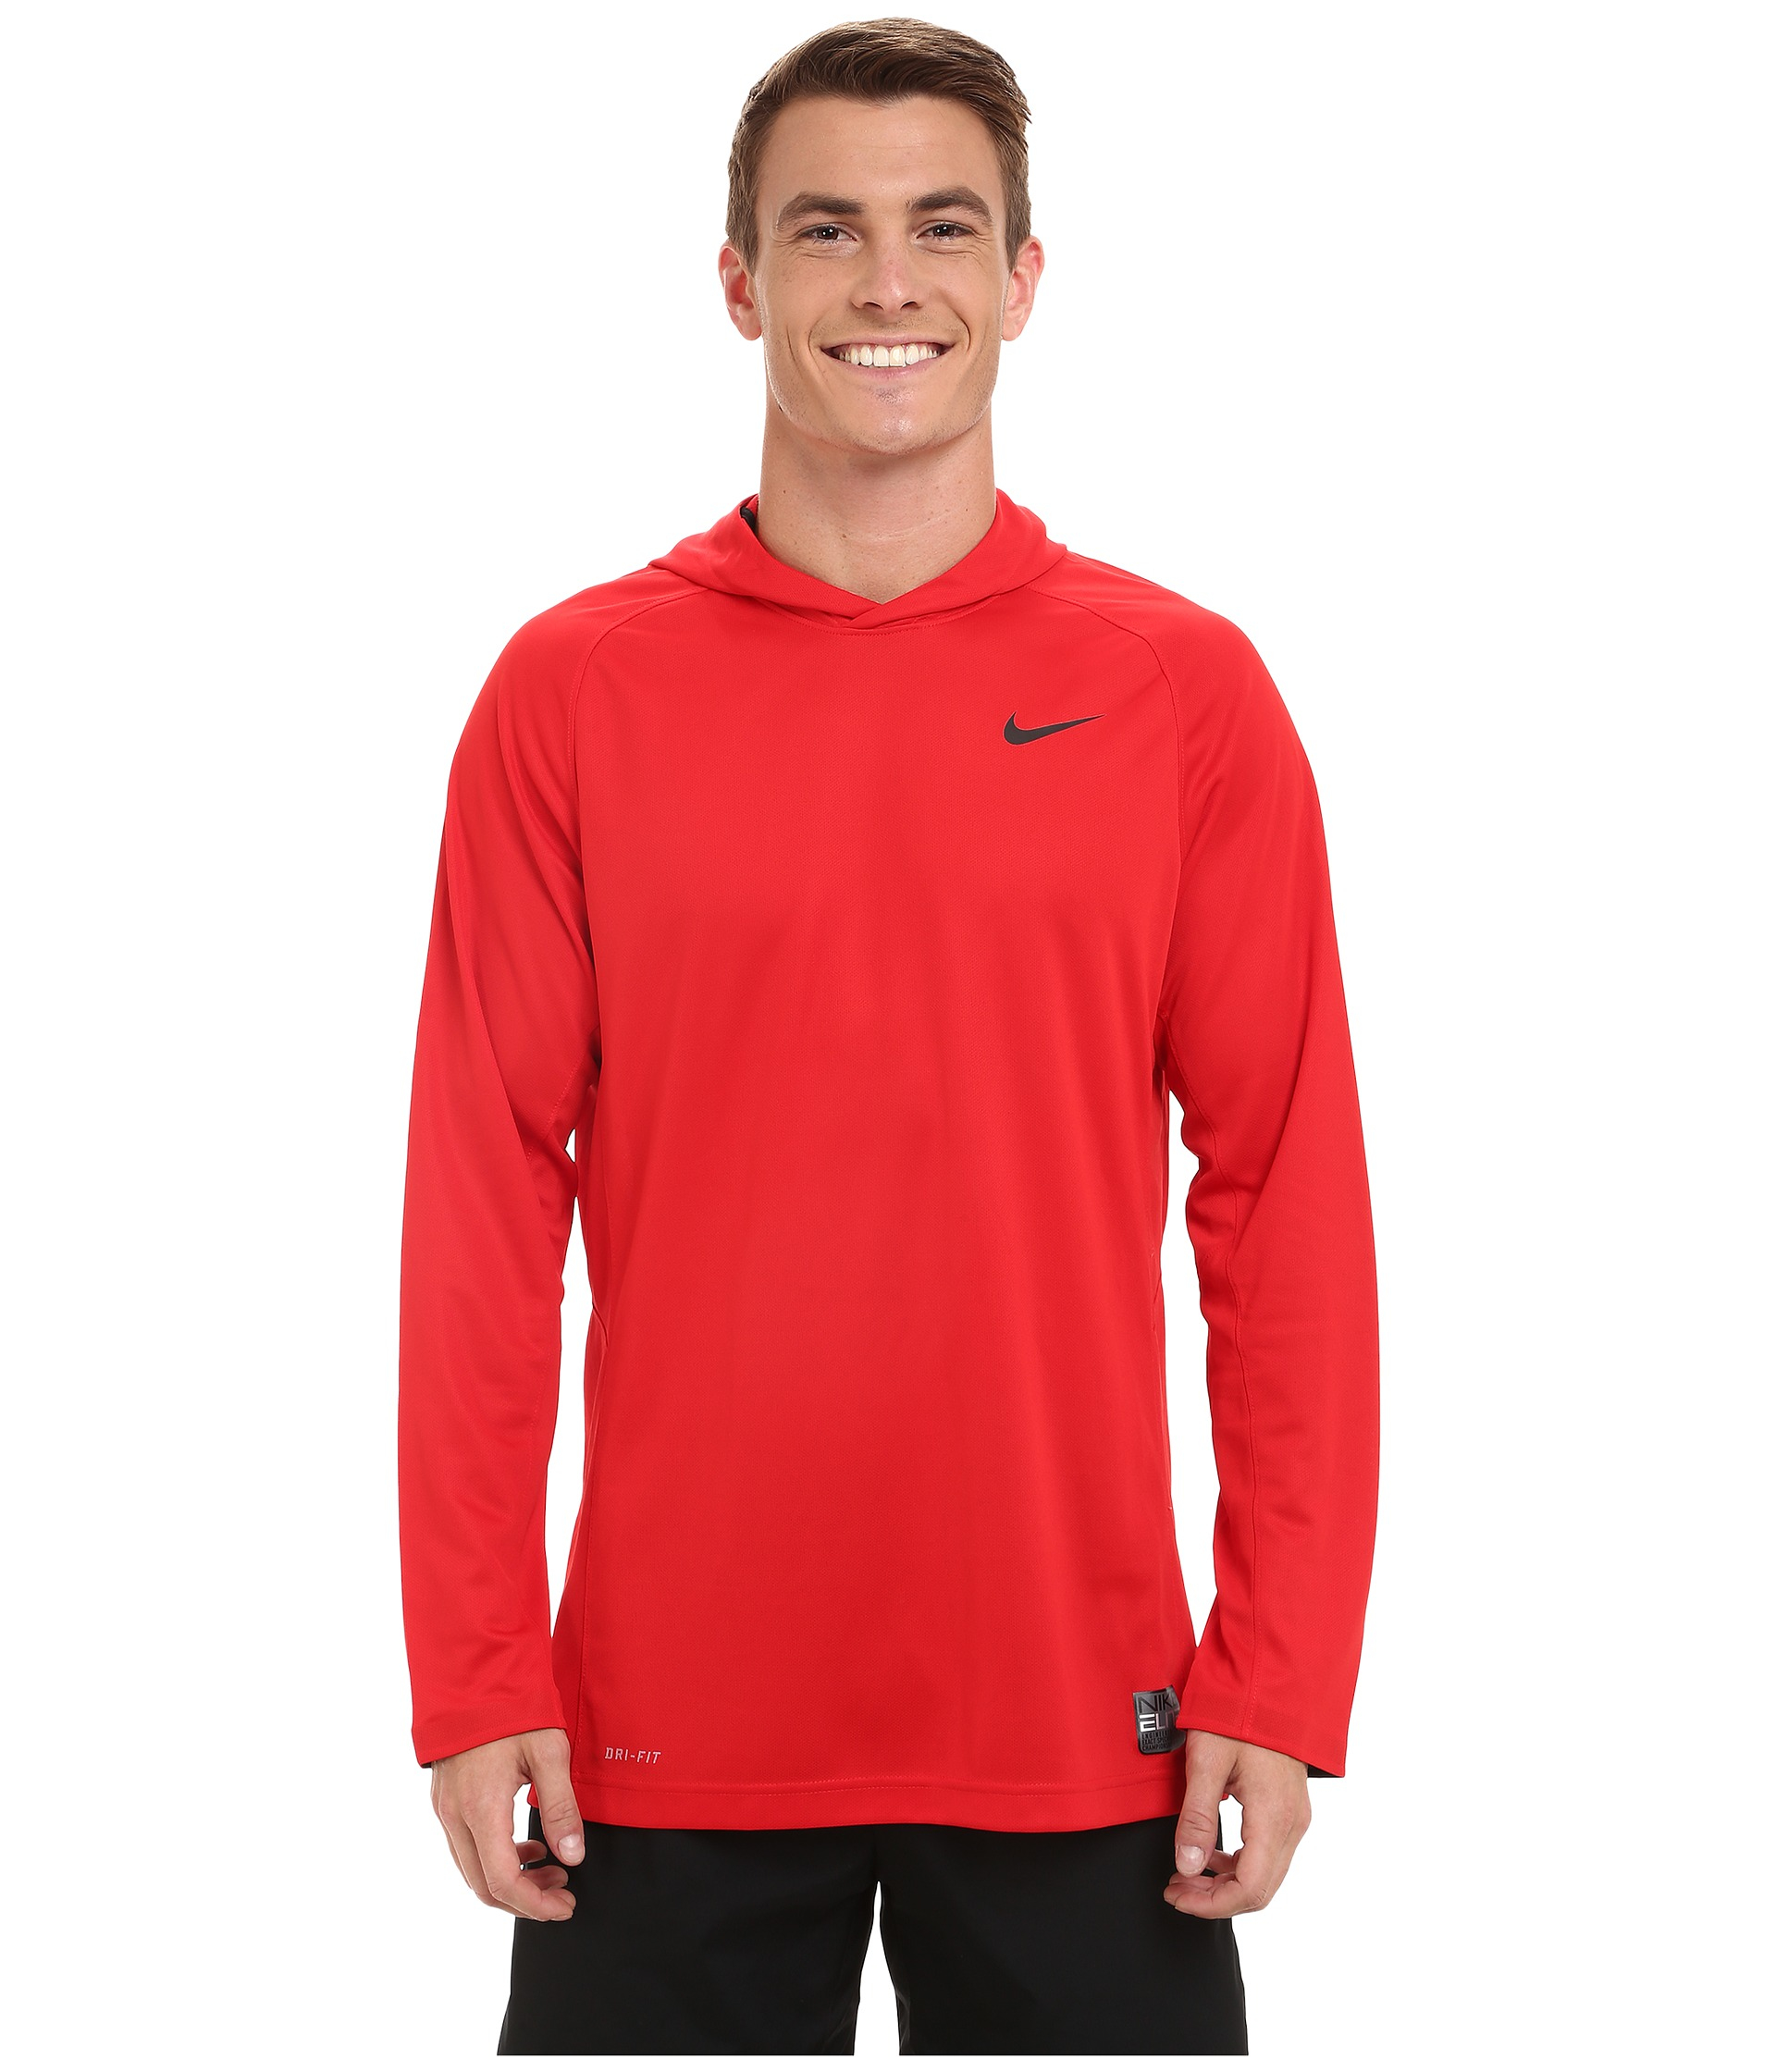 Nike Elite Hooded Shooter Shirt in Red for Men - Lyst